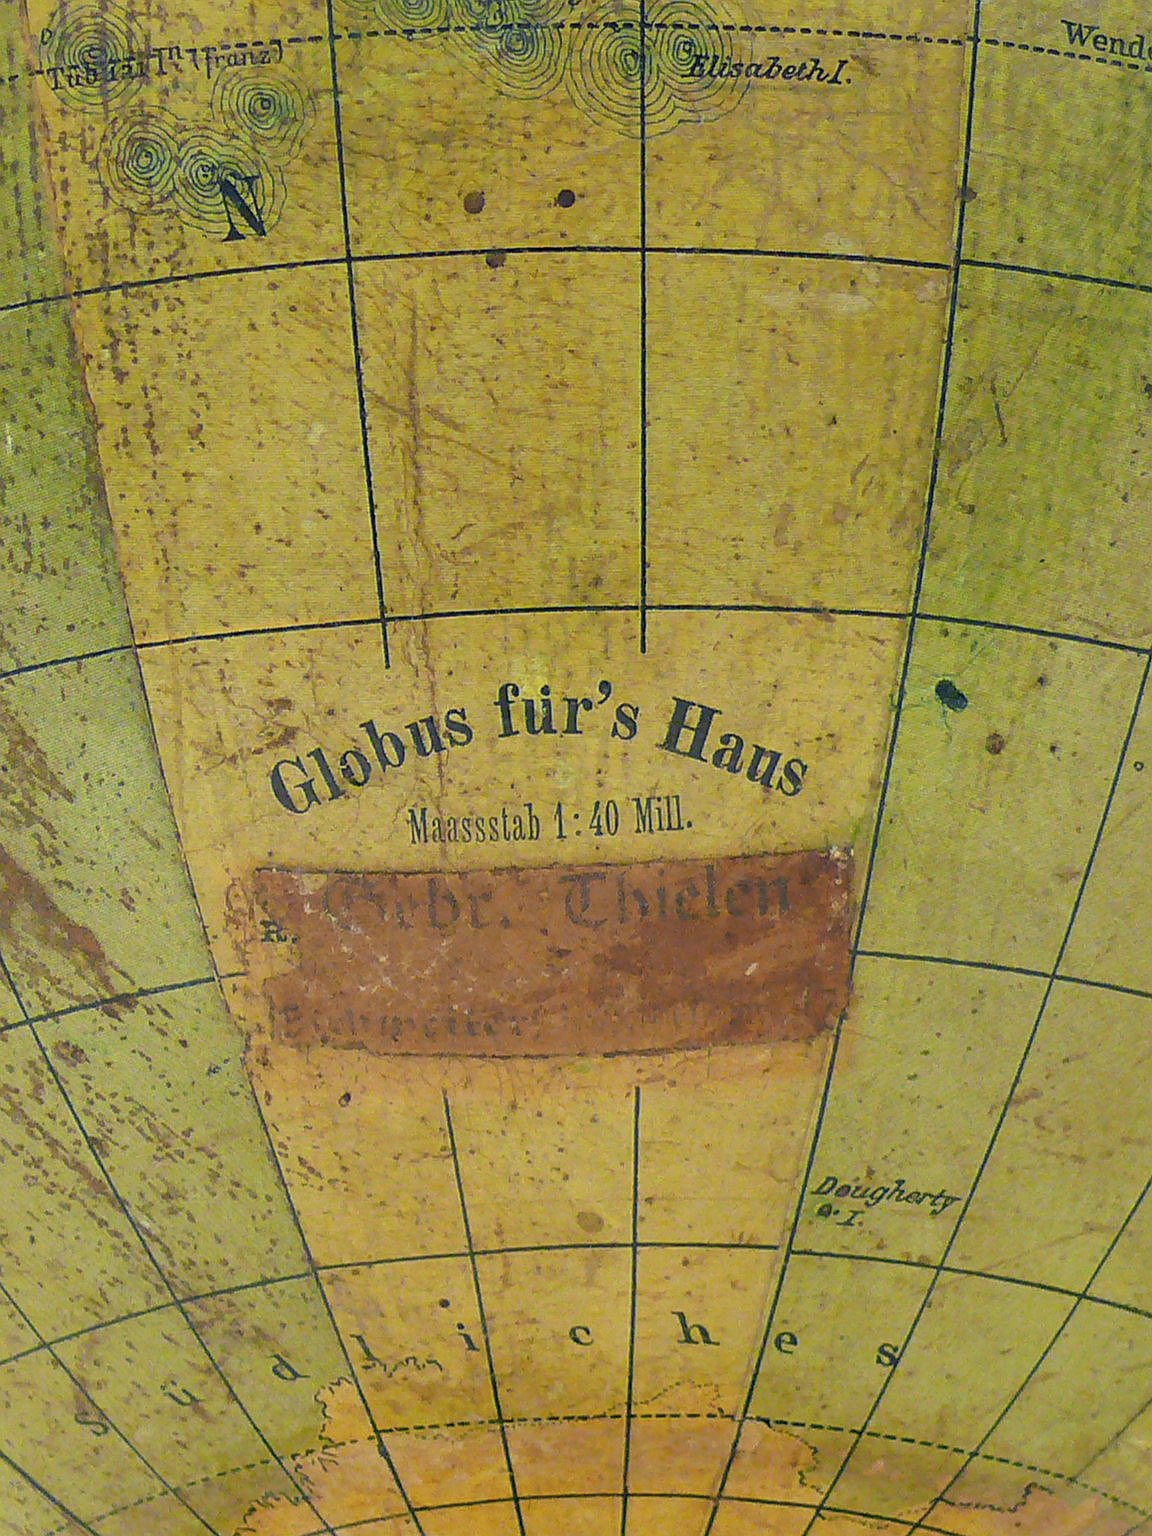 Erdglobus, terrestrial globe